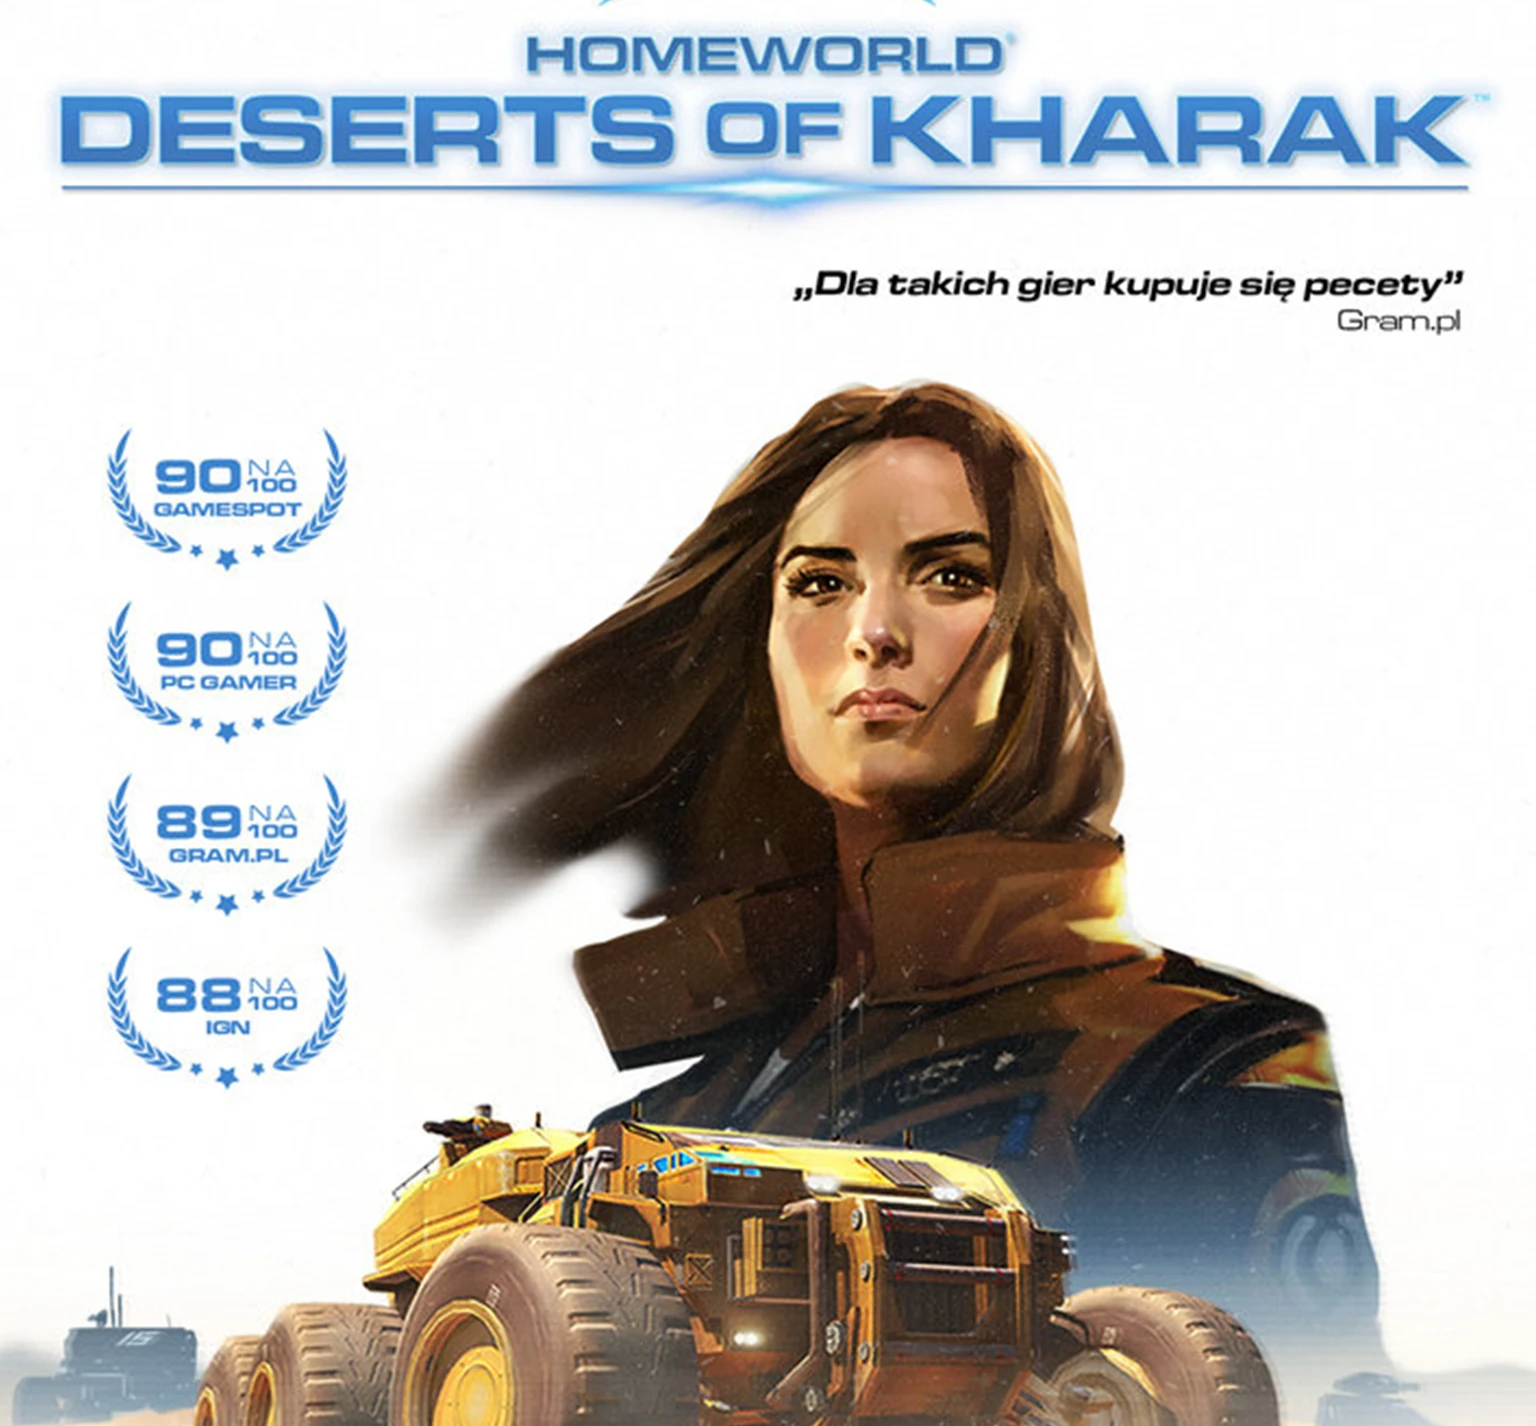 Homeworld : Deserts of Kharak